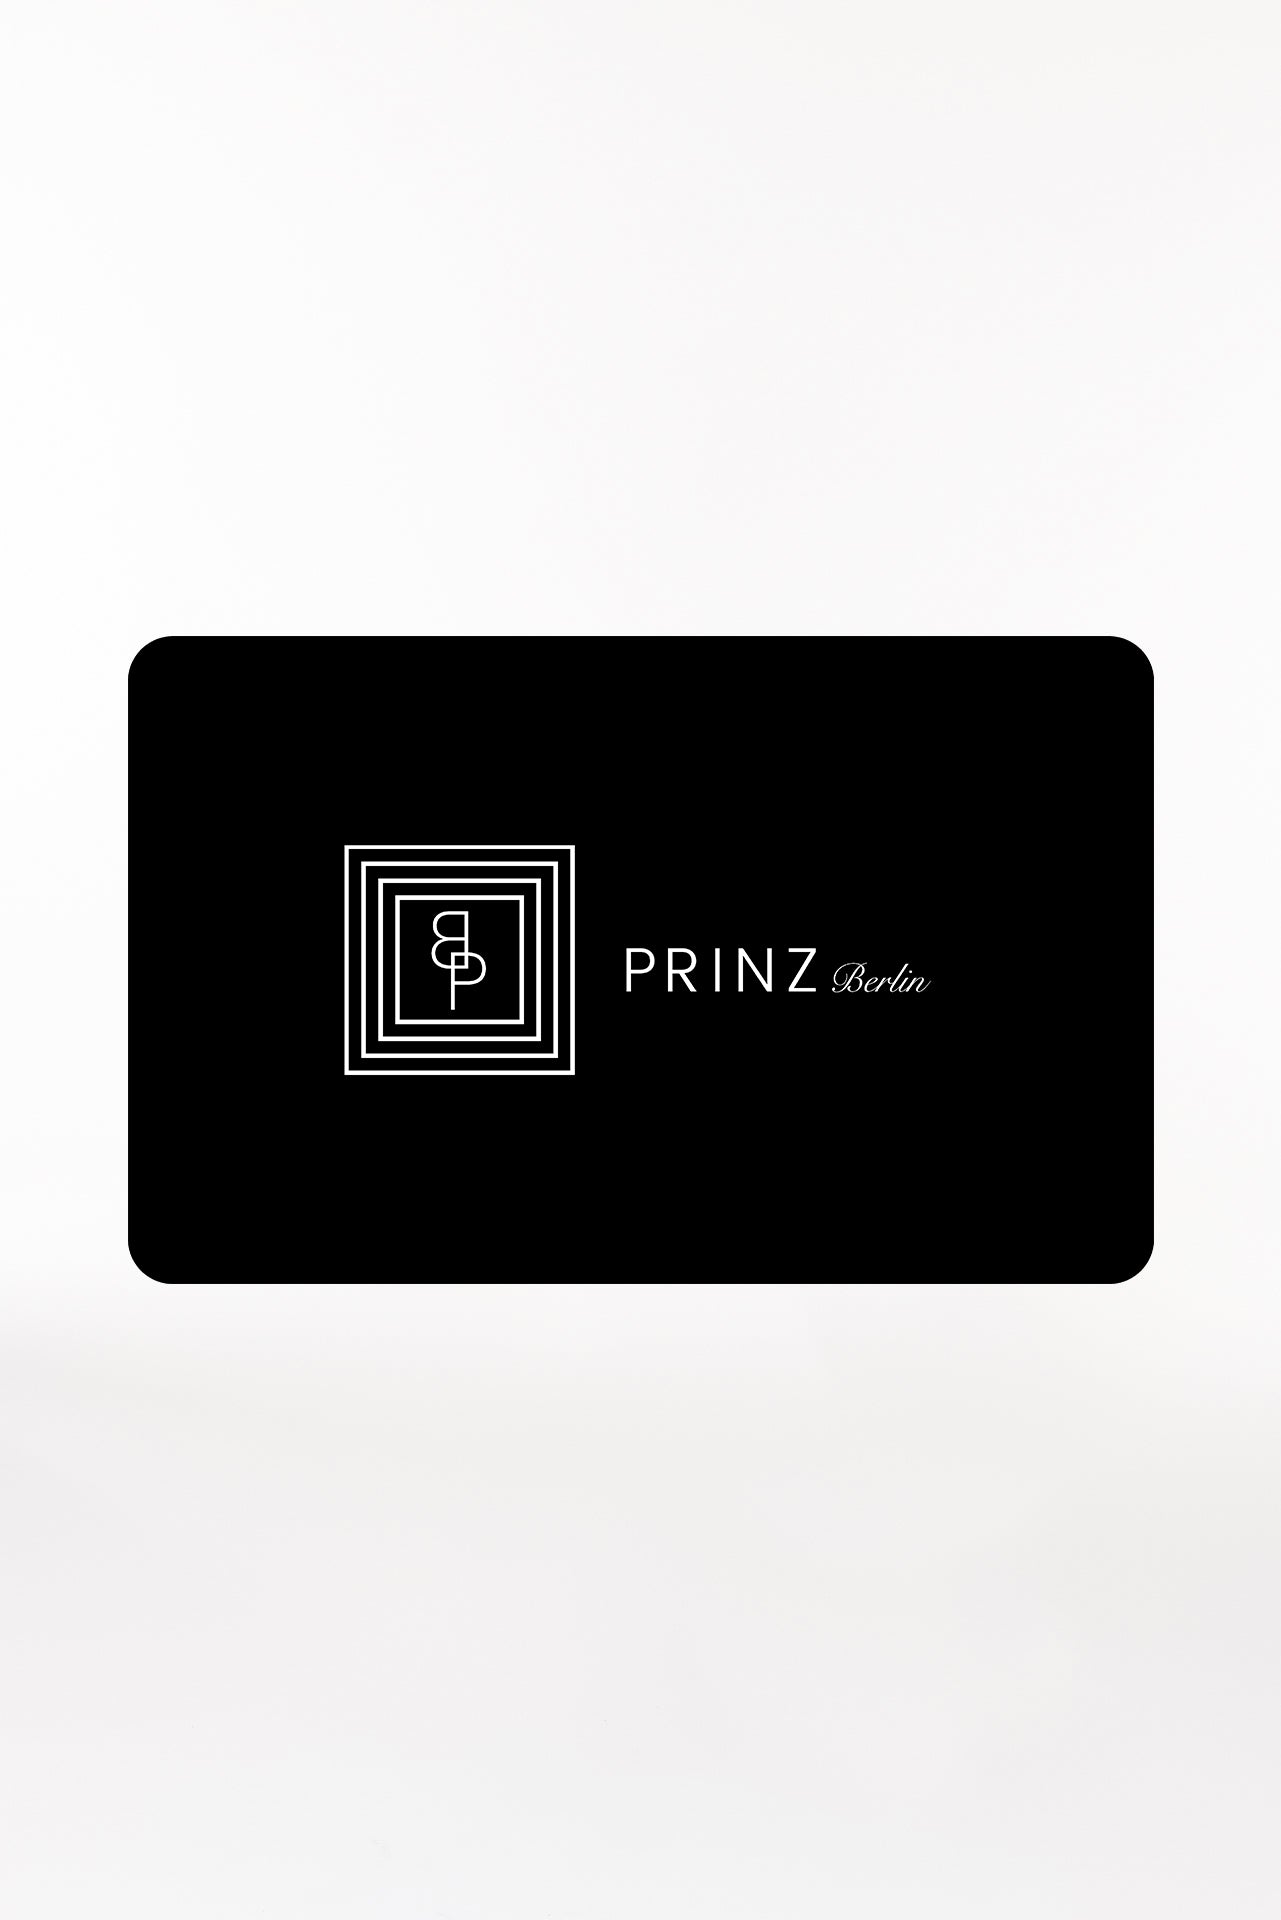 Prinz Berlin Gift Card 